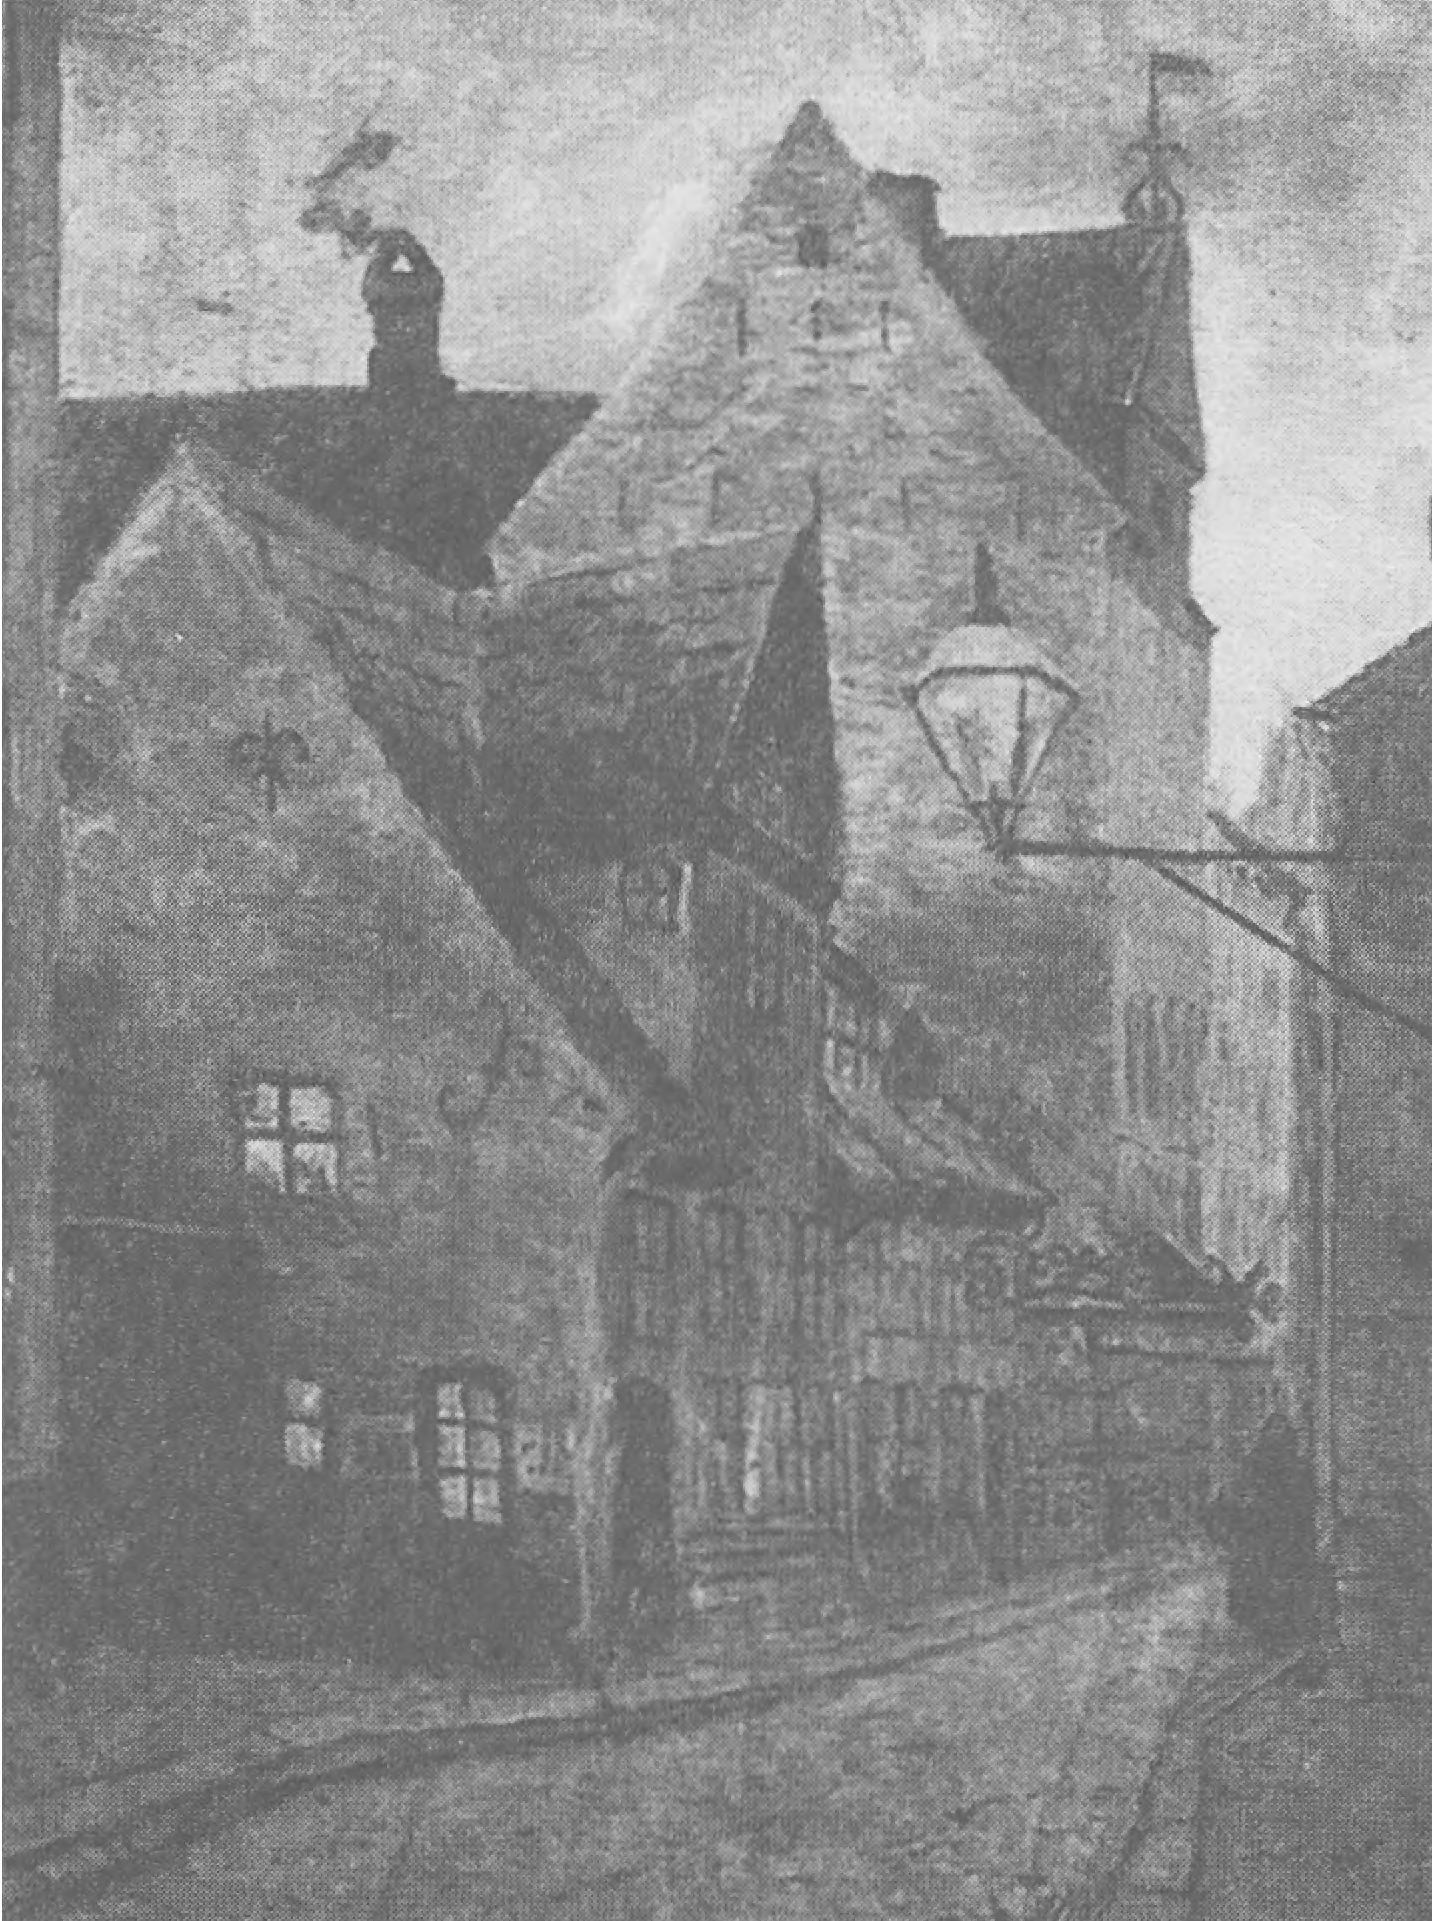 Улица Улькегаде в Копенгагене — здесь Х.К. Андерсен жил в 1819 году. Работа А. Ларсена